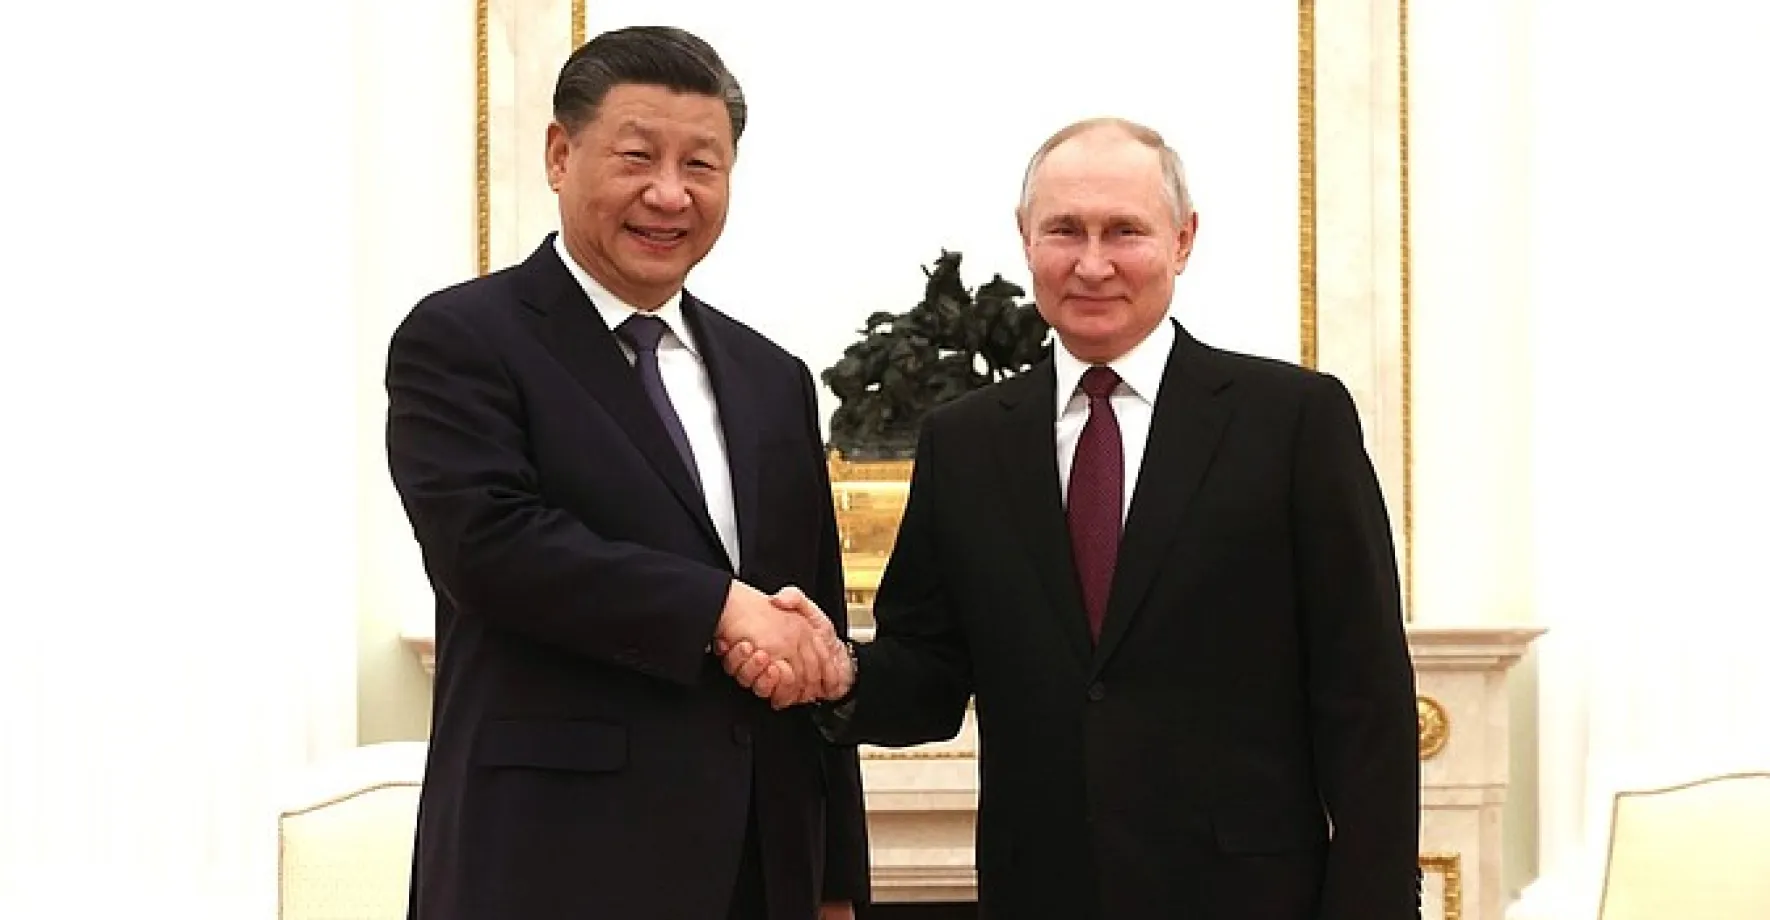 Prezident Si v Moskvě a souboj velmocí. „Papírových tygrů se nebojíme,“ vzkazuje Čína